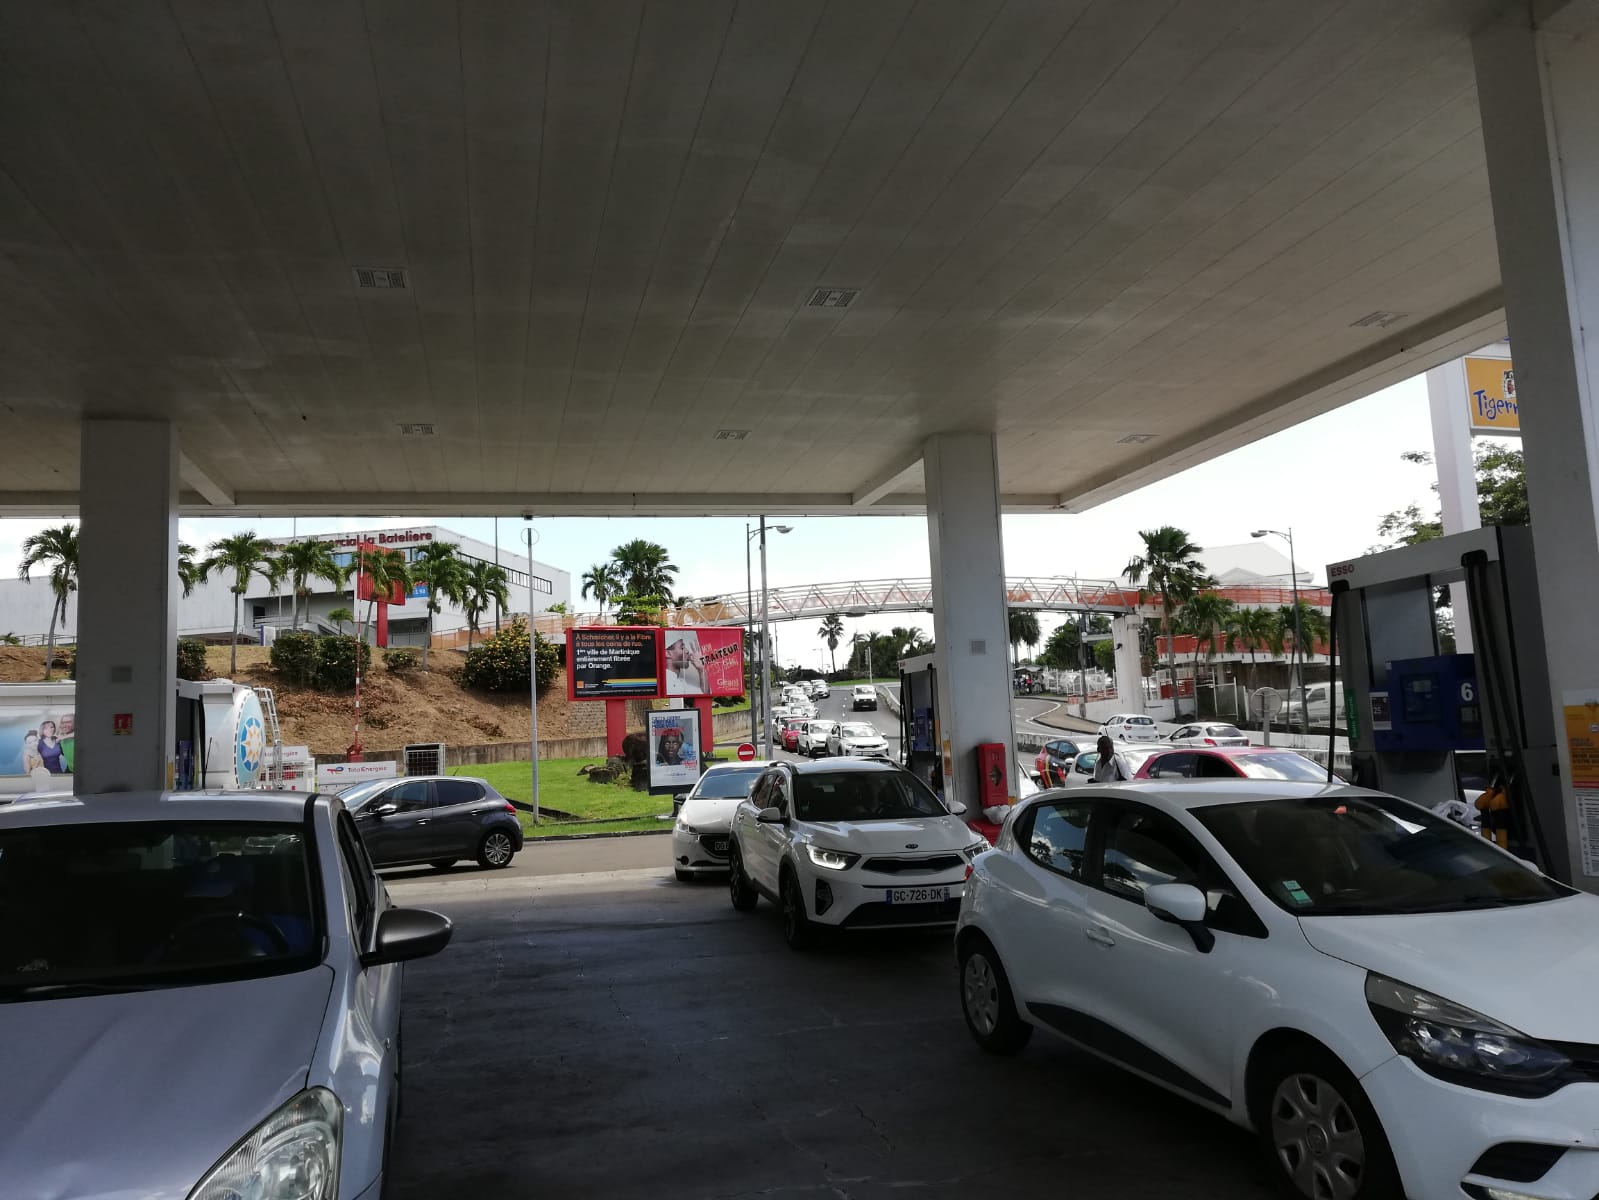     Carburants : les prix du sans plomb et du gazole augmentent 

